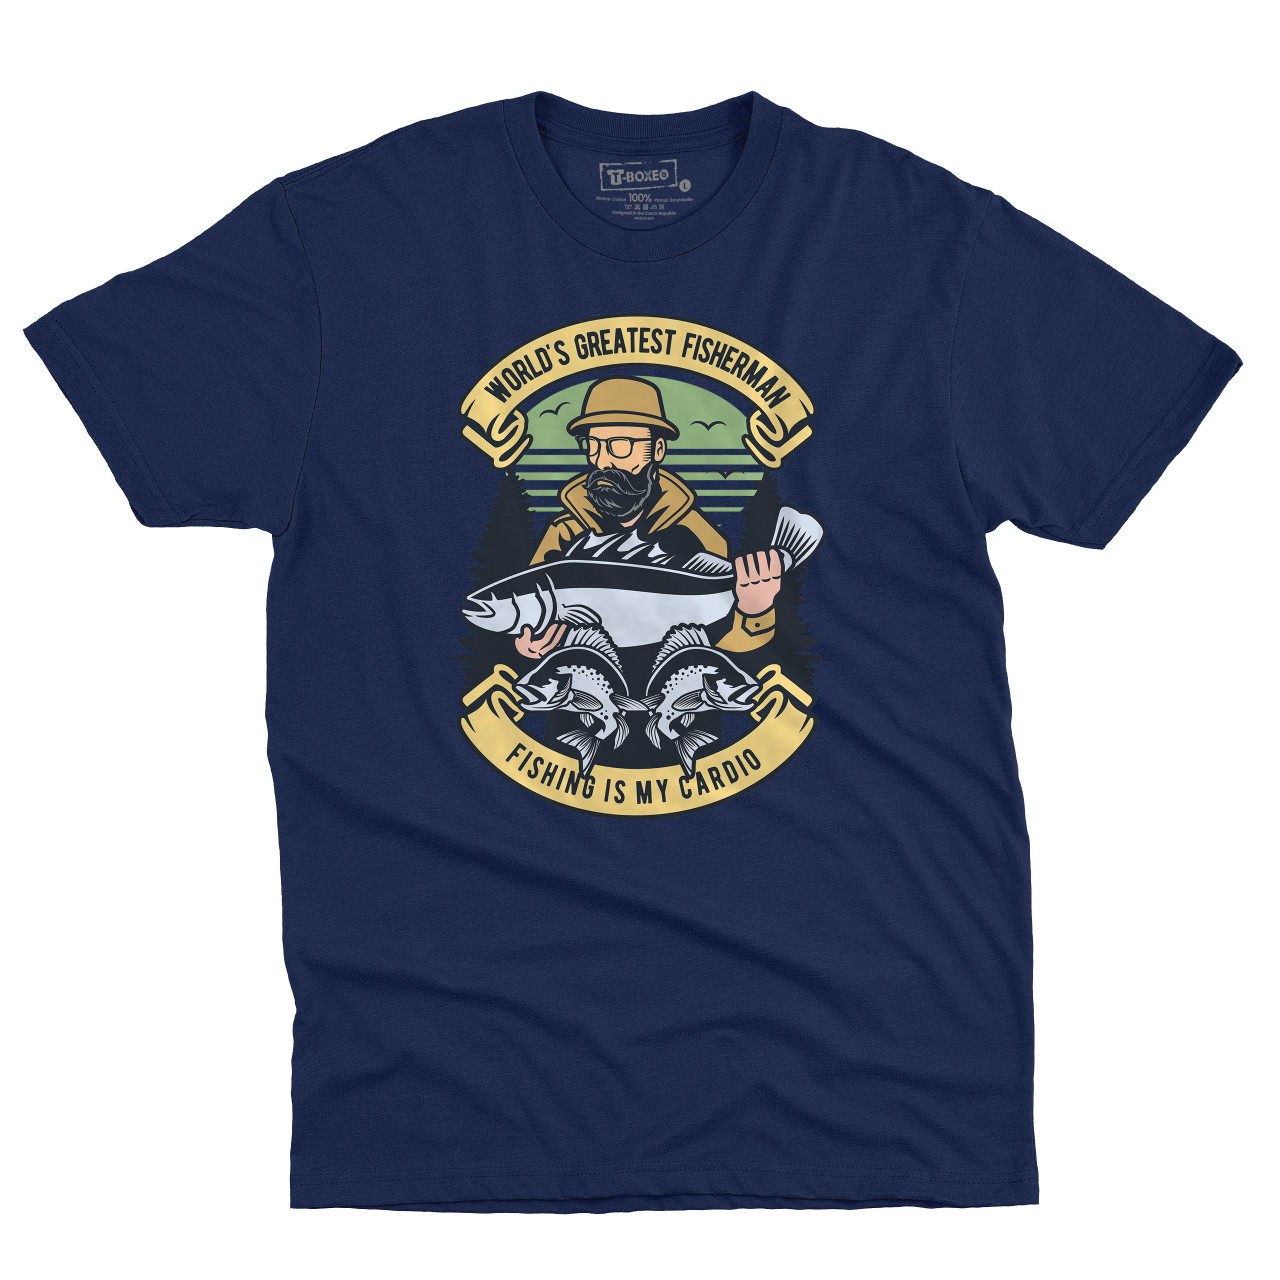 Pánské tričko s potisek “World’s Greatest Fisherman”